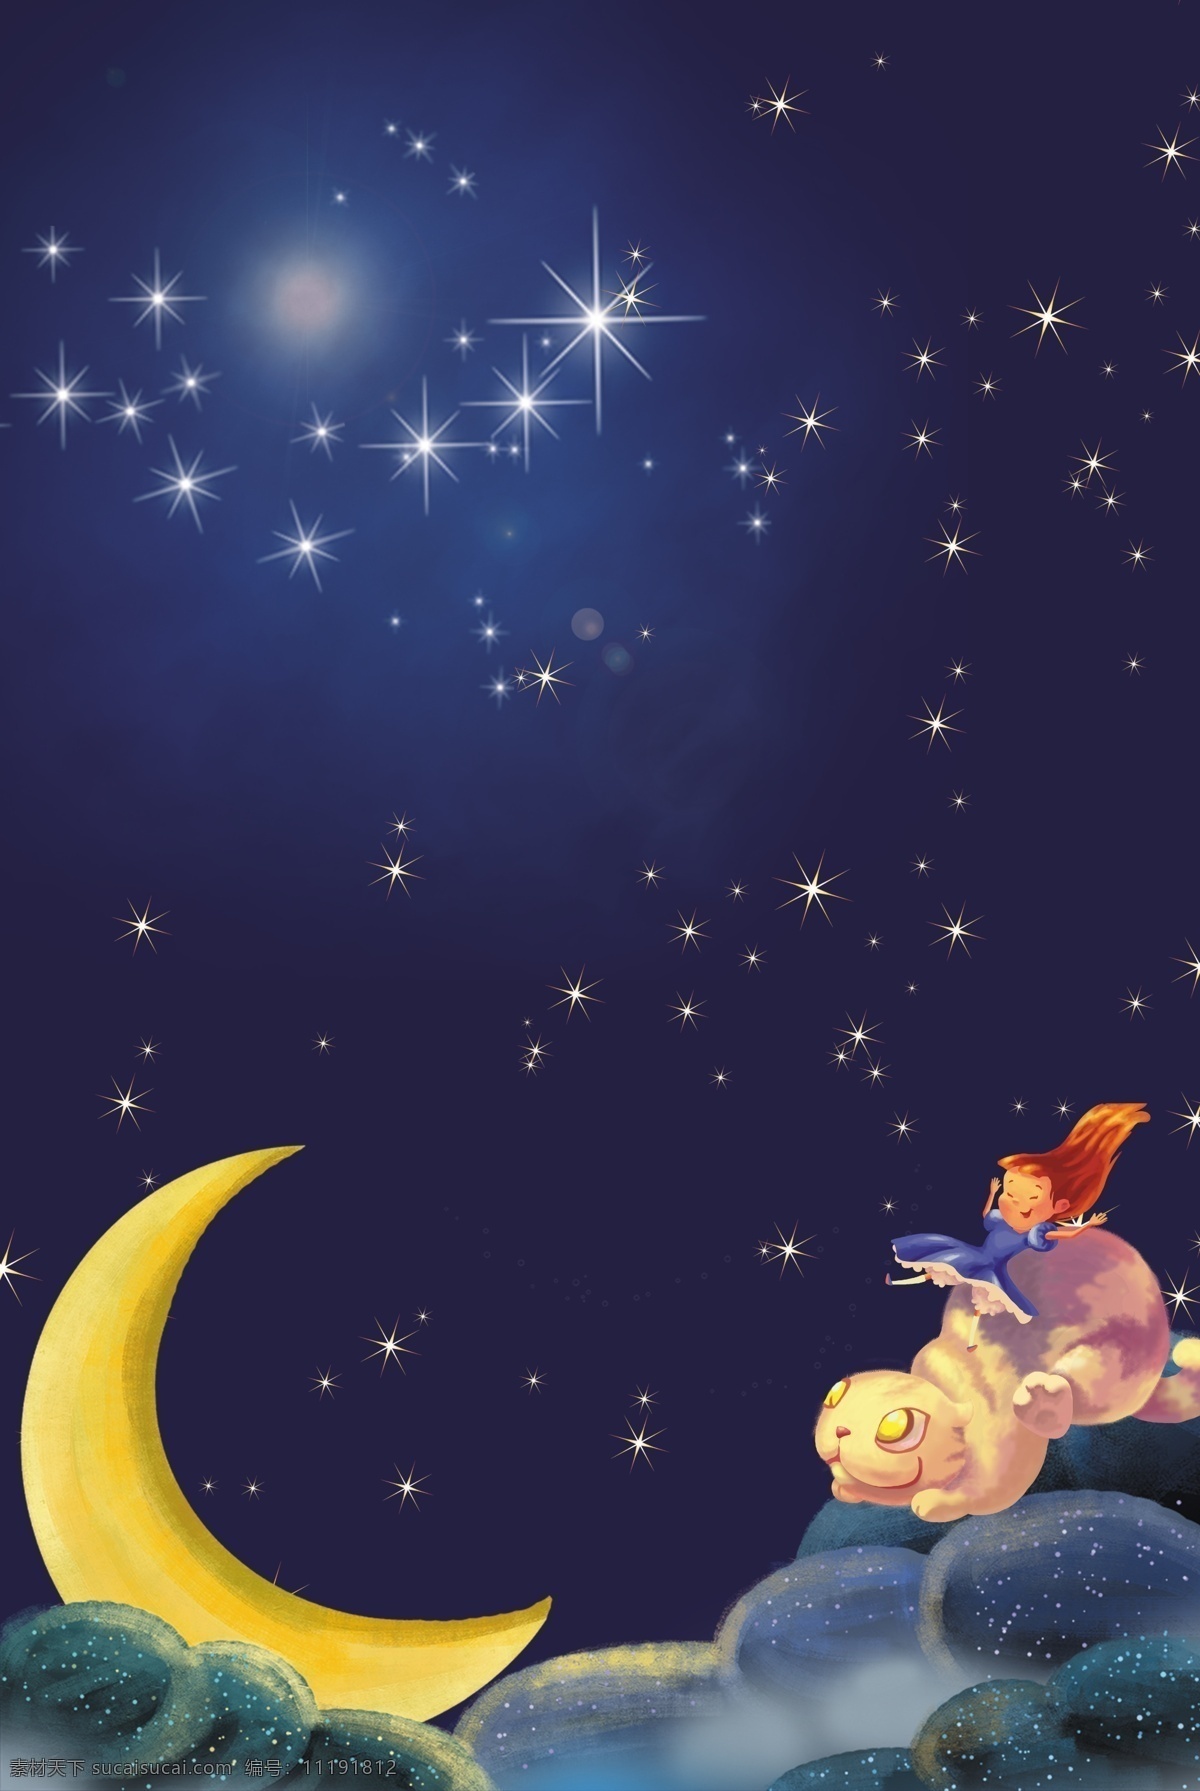 星空 梦幻 唯美 背景 星空的图片 月光的背景 日系的背景 星空的背景 星空的主题 女孩的背景 仲夏夜的图片 星星的背景